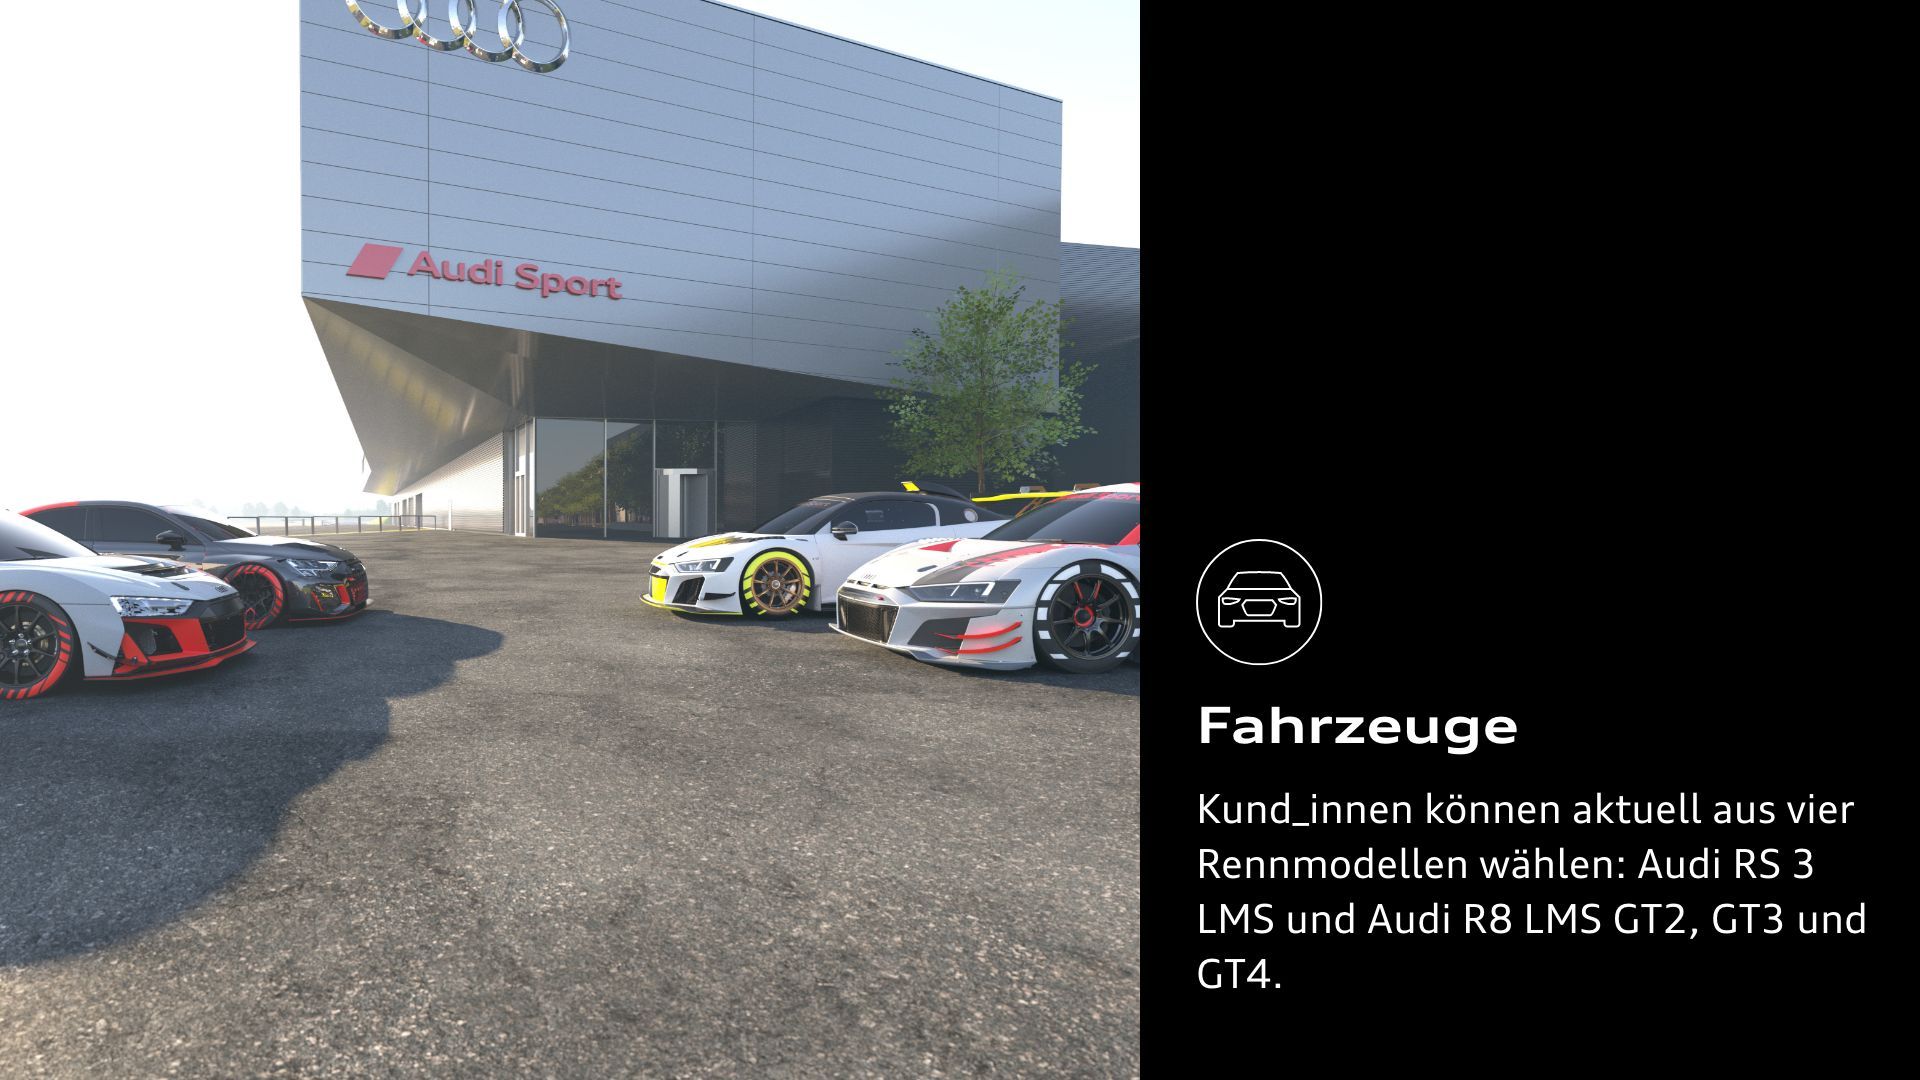 Fahrzeuge: Kund_innen können aktuell aus vier Rennmodellen wählen: Audi RS 3 LMS und Audi R8 LMS GT2, GT3 und GT4.